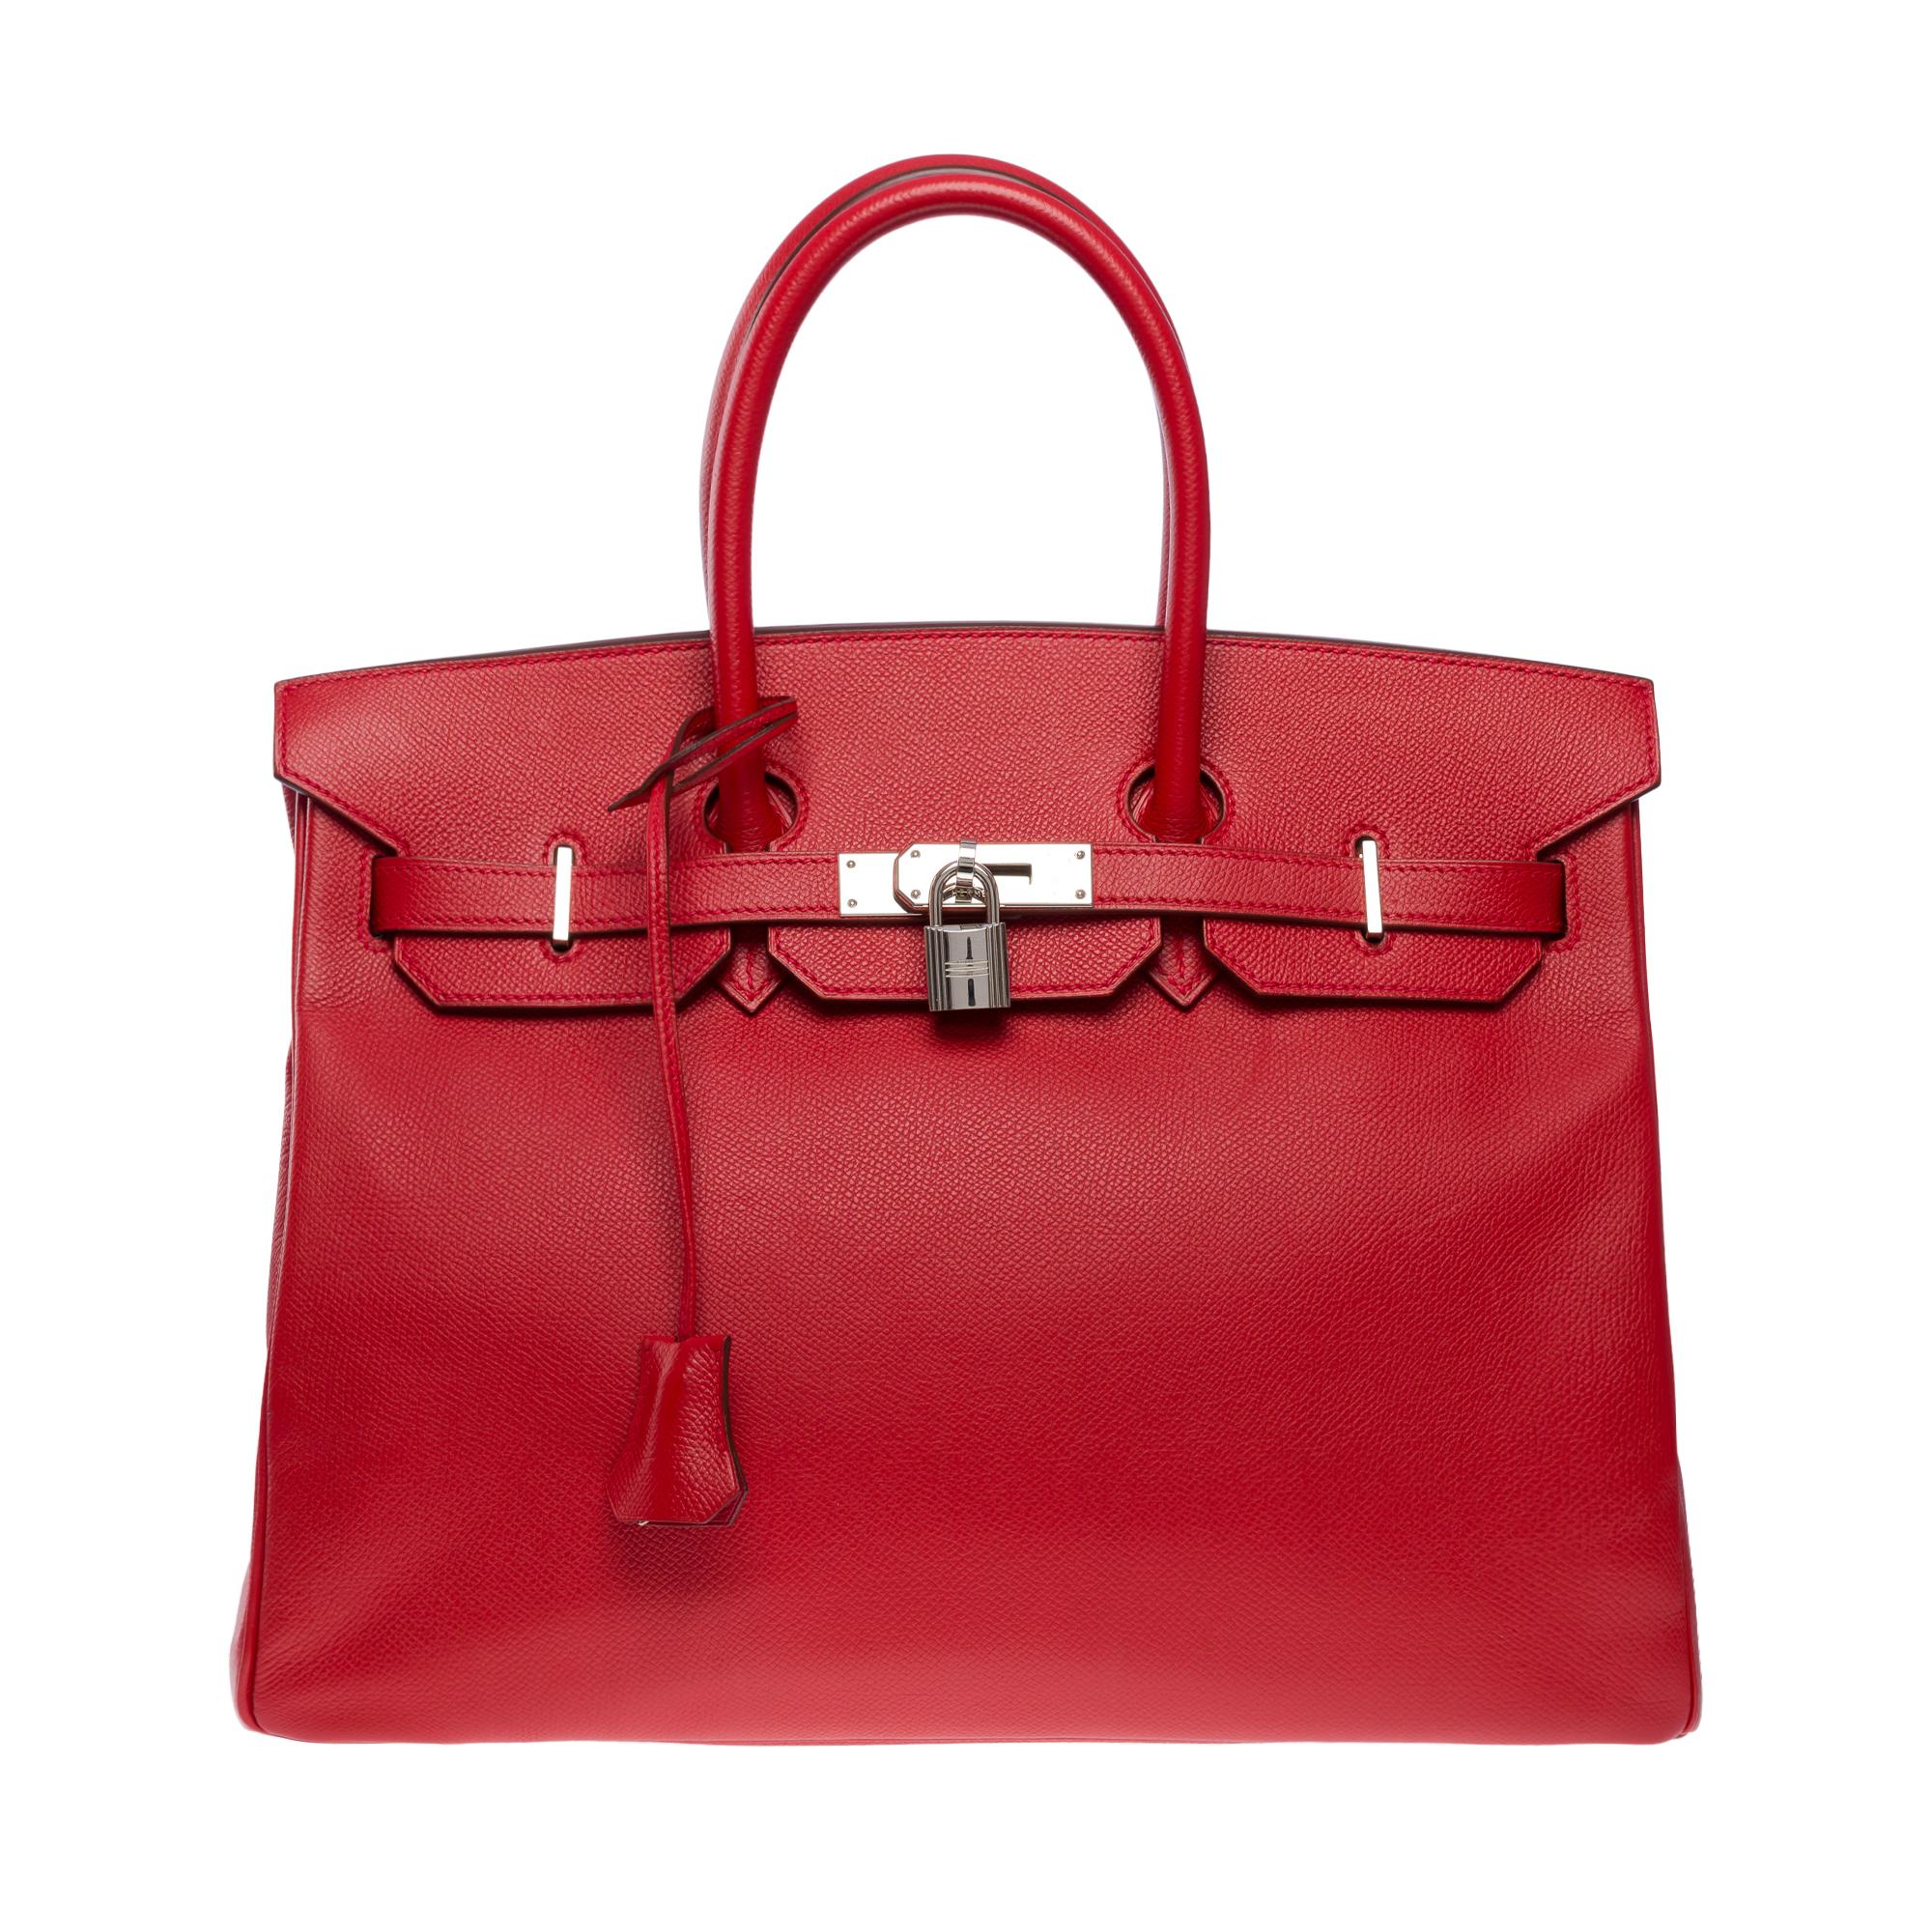 Superbe sac à main Hermès Birkin 35 en cuir Rouge Garance Epsom, quincaillerie en métal argenté palladium, double anse en cuir rouge permettant un portage à la main.

Fermeture à rabat
Doublure intérieure en cuir rouge, une poche zippée, une poche